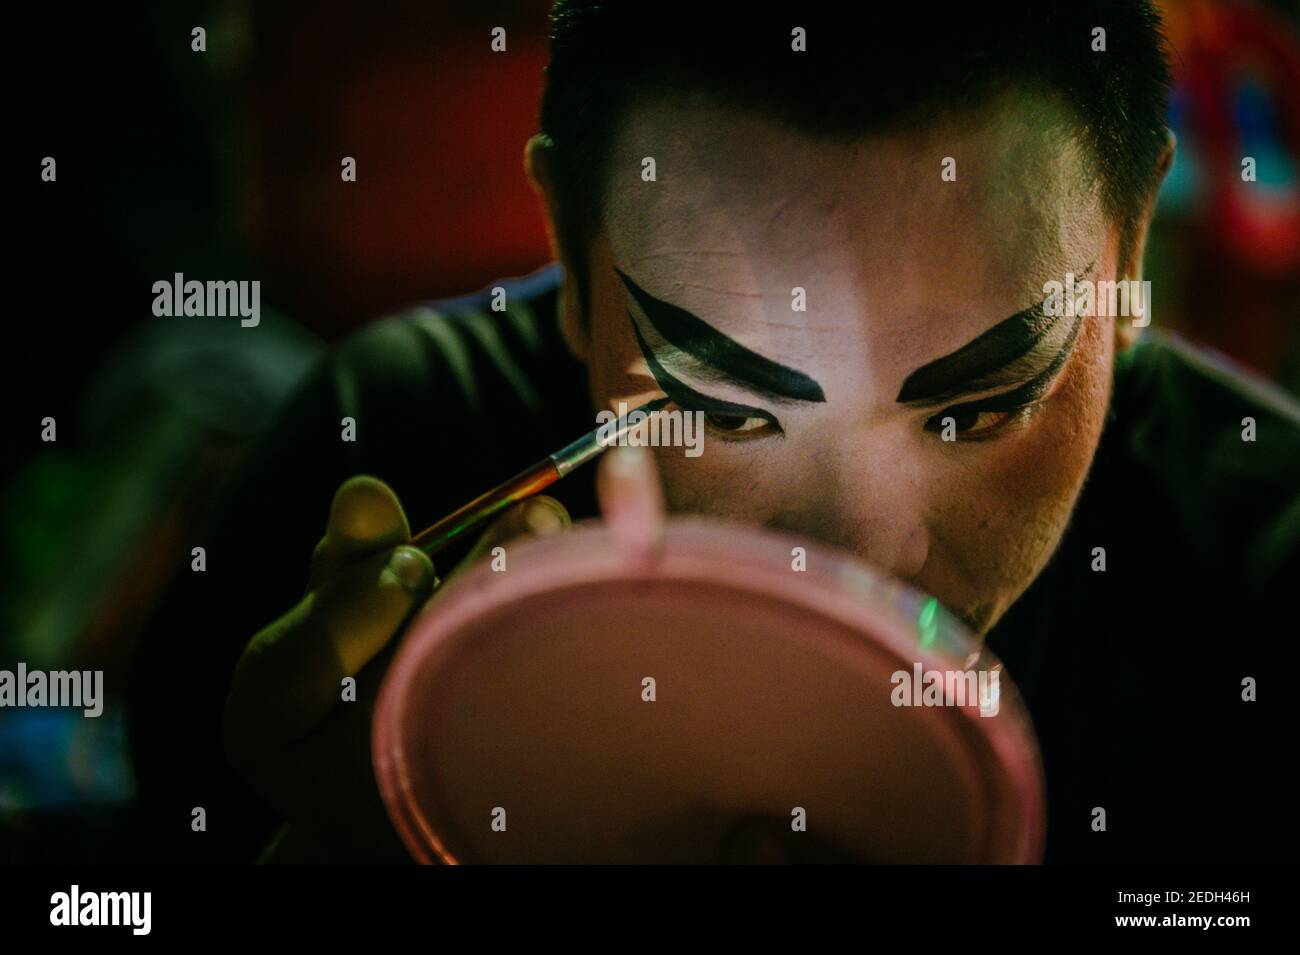 Trucco uomo cinese immagini e fotografie stock ad alta risoluzione - Alamy